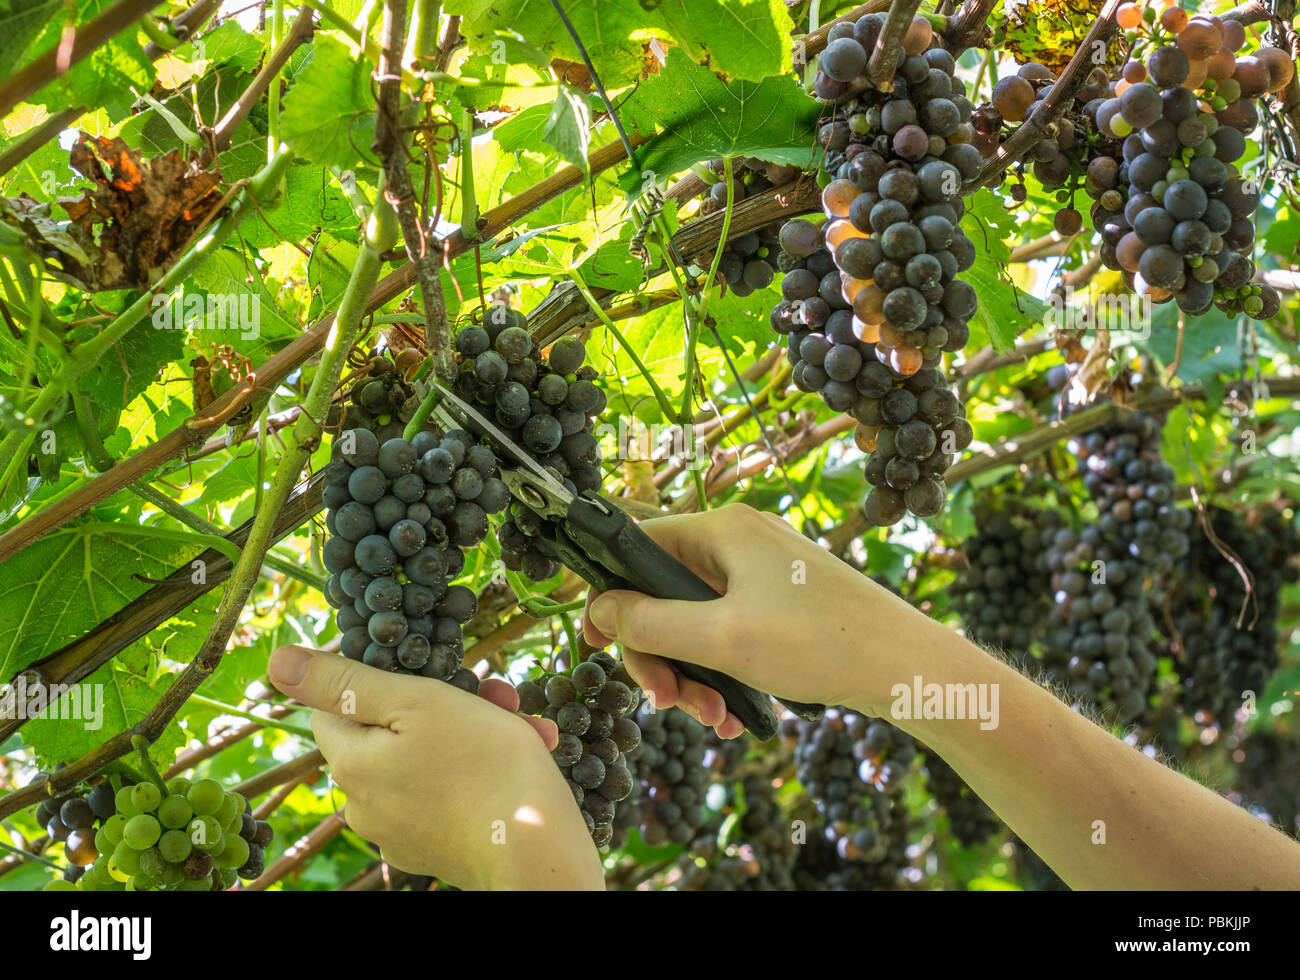 Les mains du travailleur noir coupe les raisins de vignes au cours de récolte du vin en septembre. La récolte du raisin dans le vignoble italien, le Tyrol du Sud, Italie Banque D'Images